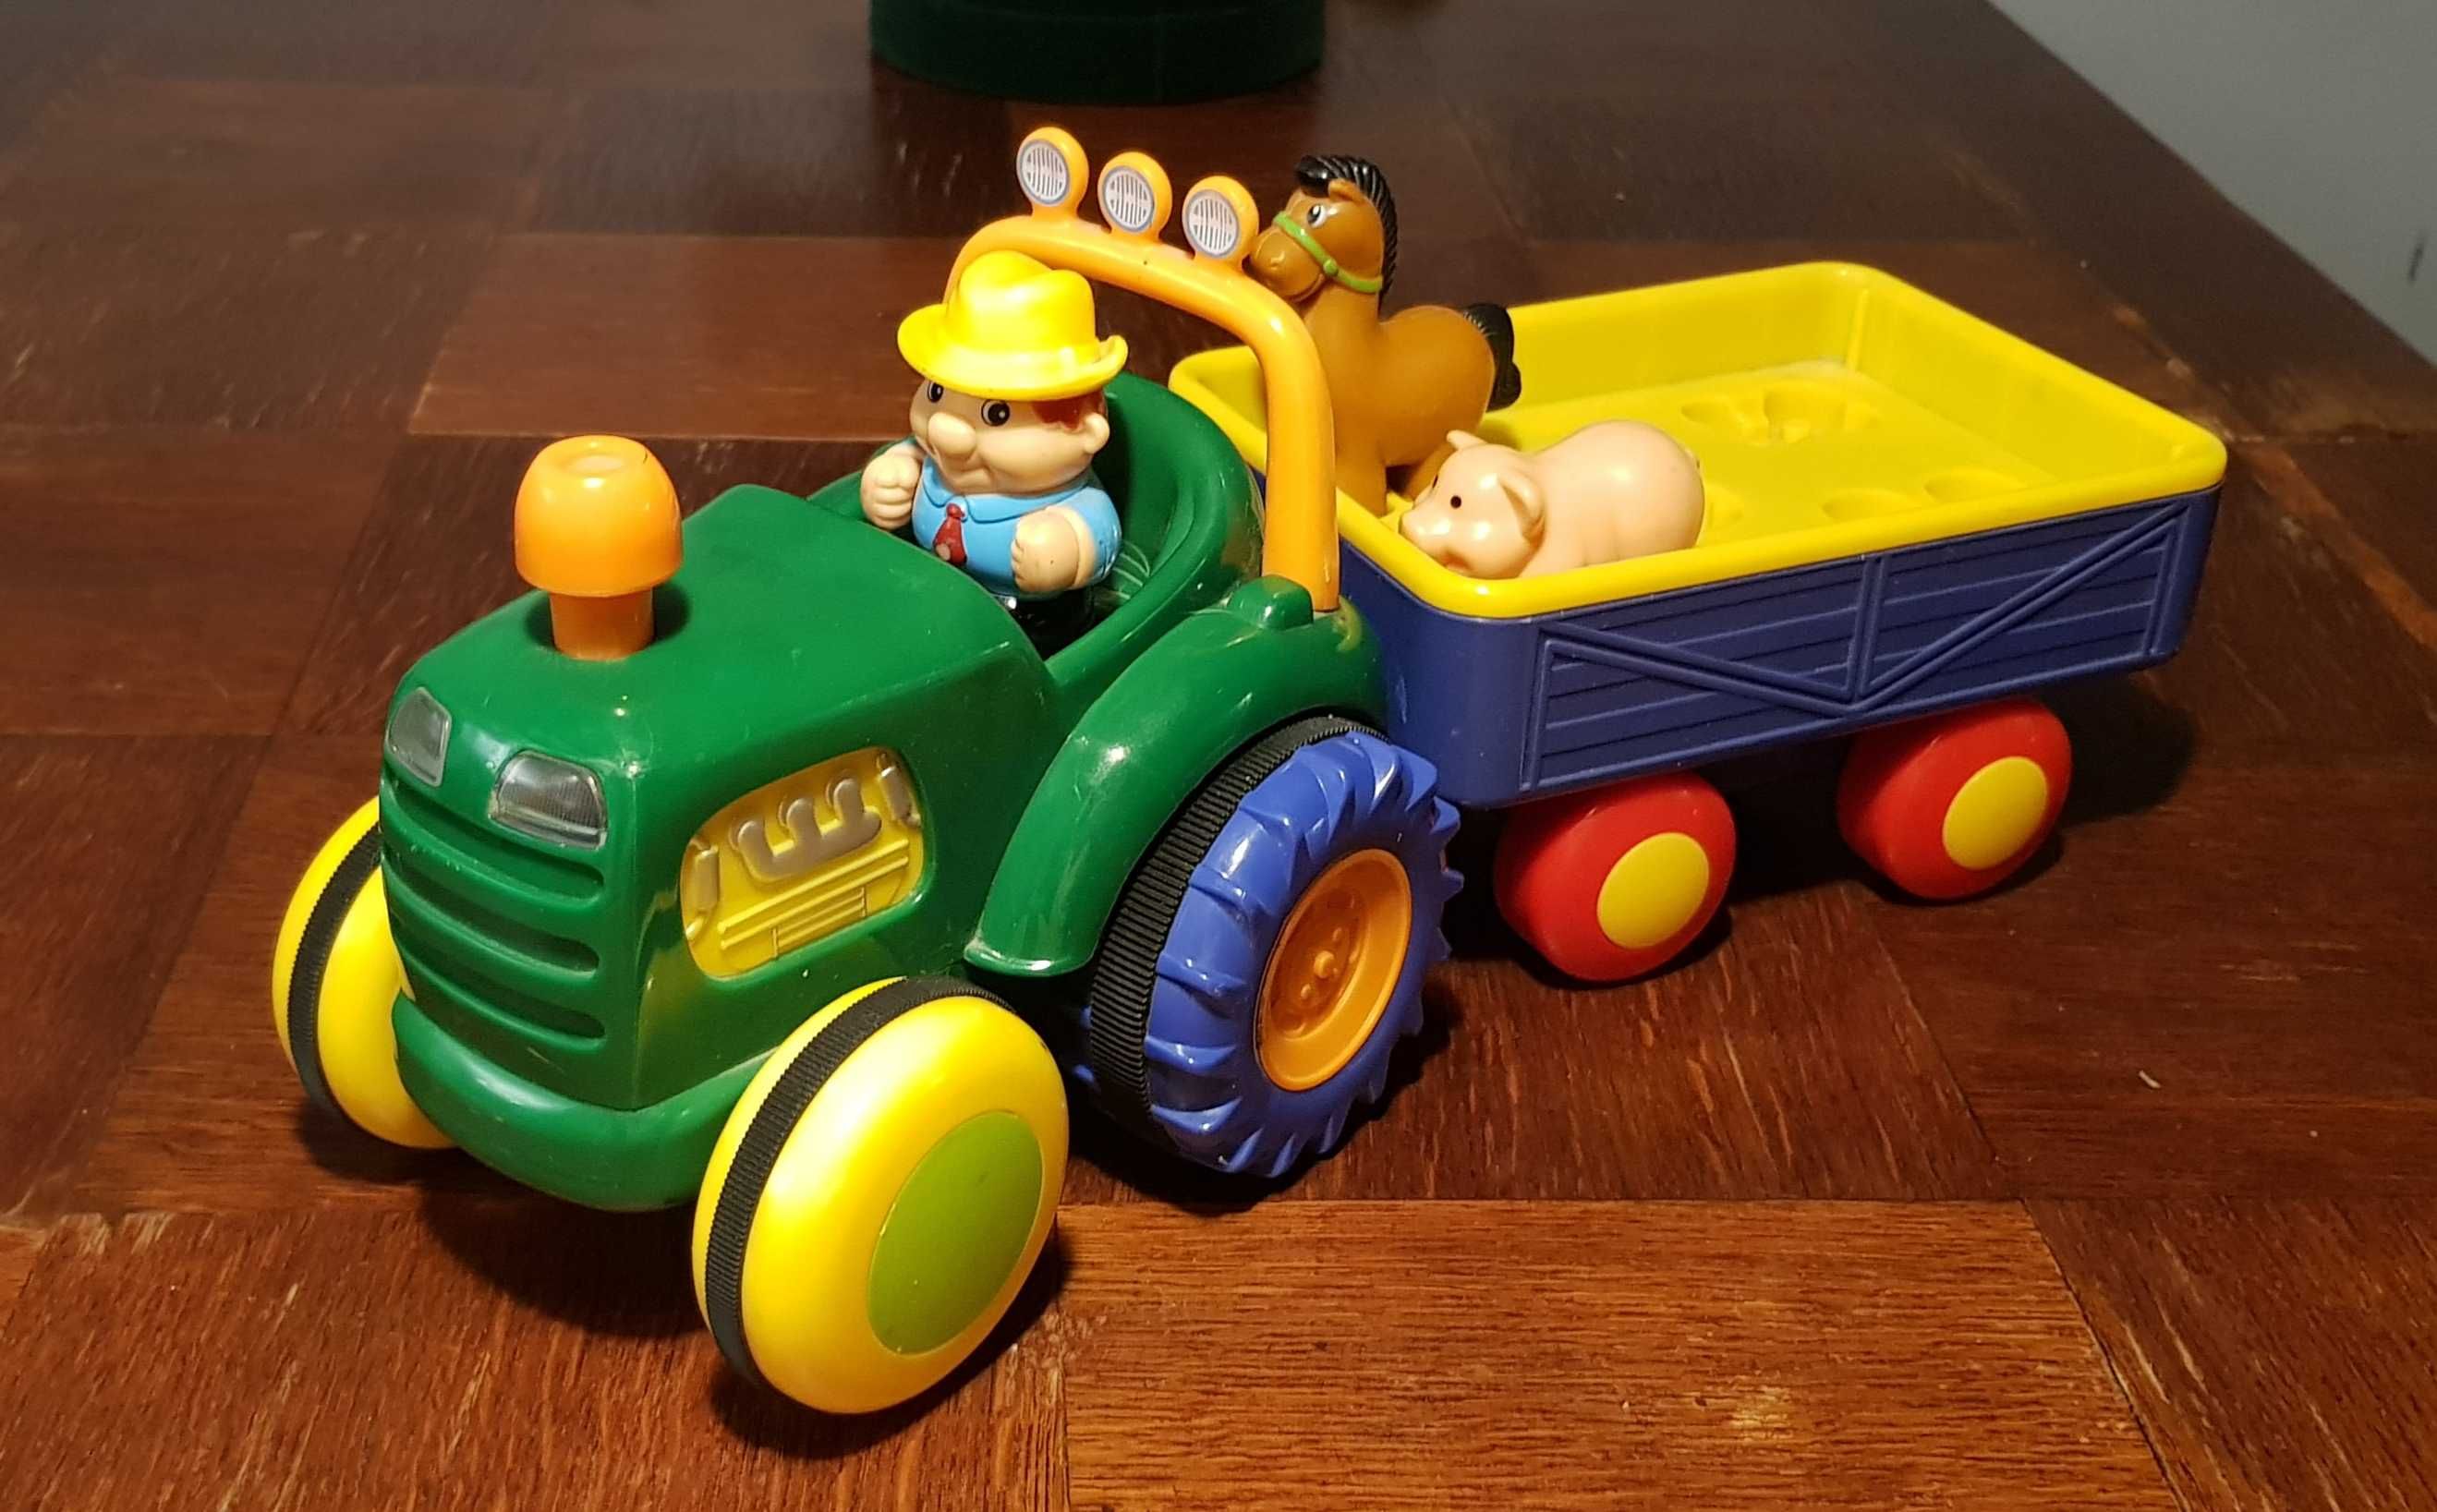 Zabawka traktor z przyczepą - wydający dźwięki, jeżdżący, z figurkami